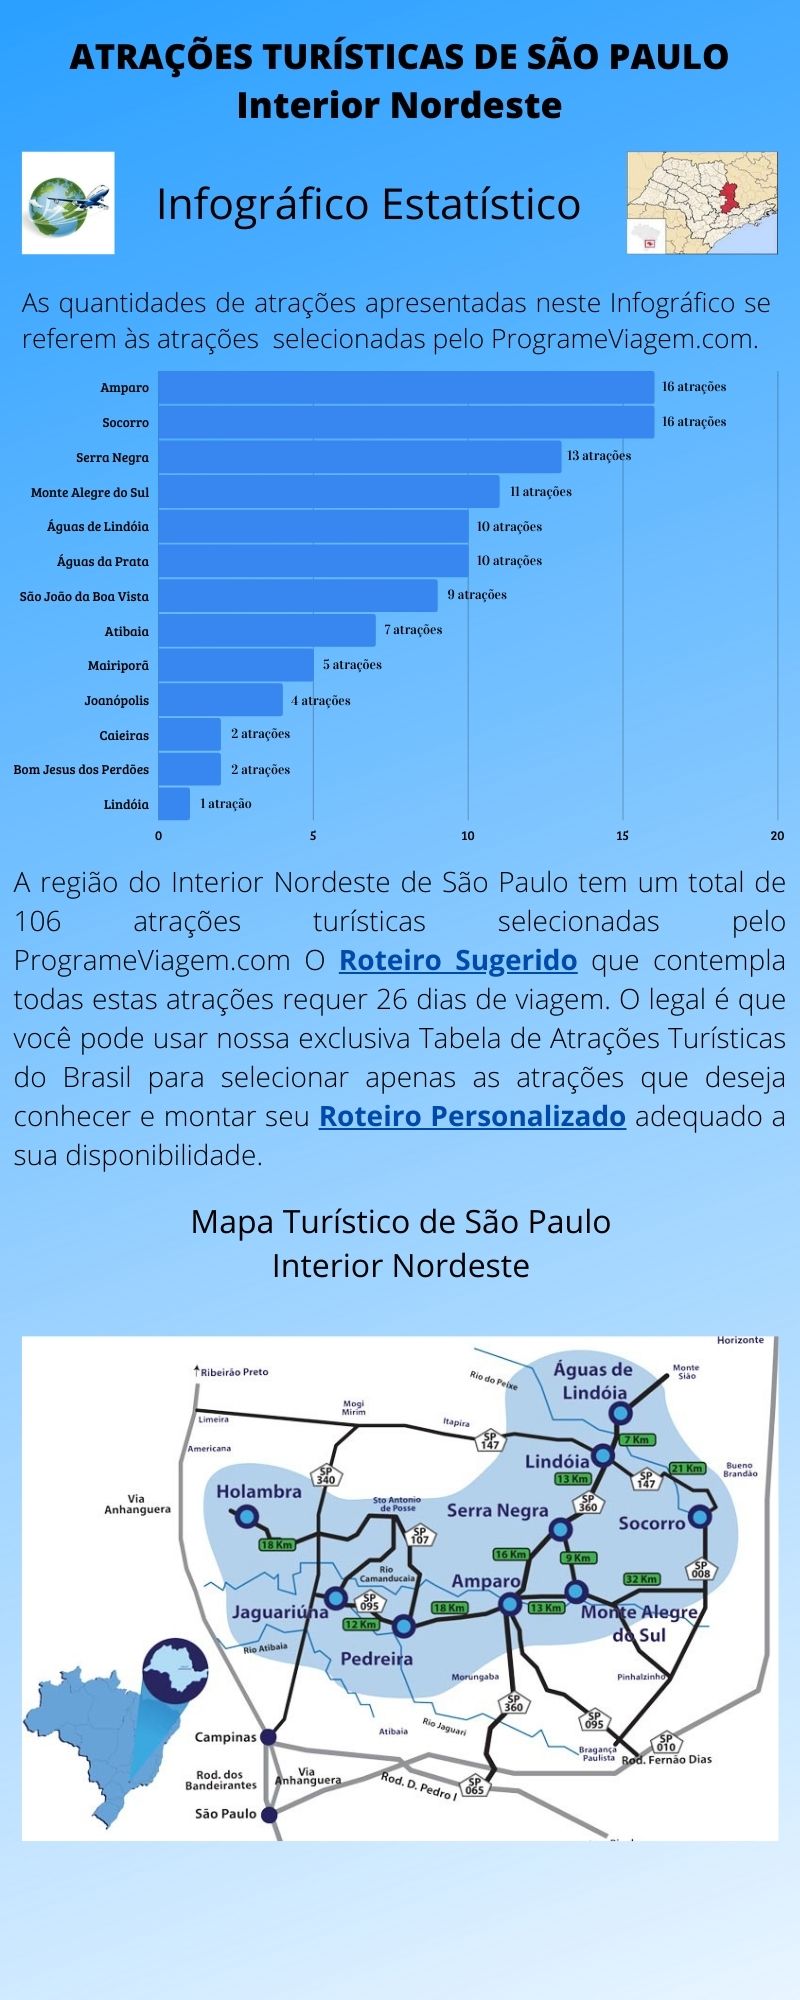 Infográfico Atrações Turísticas de São Paulo (Interior Nordeste)